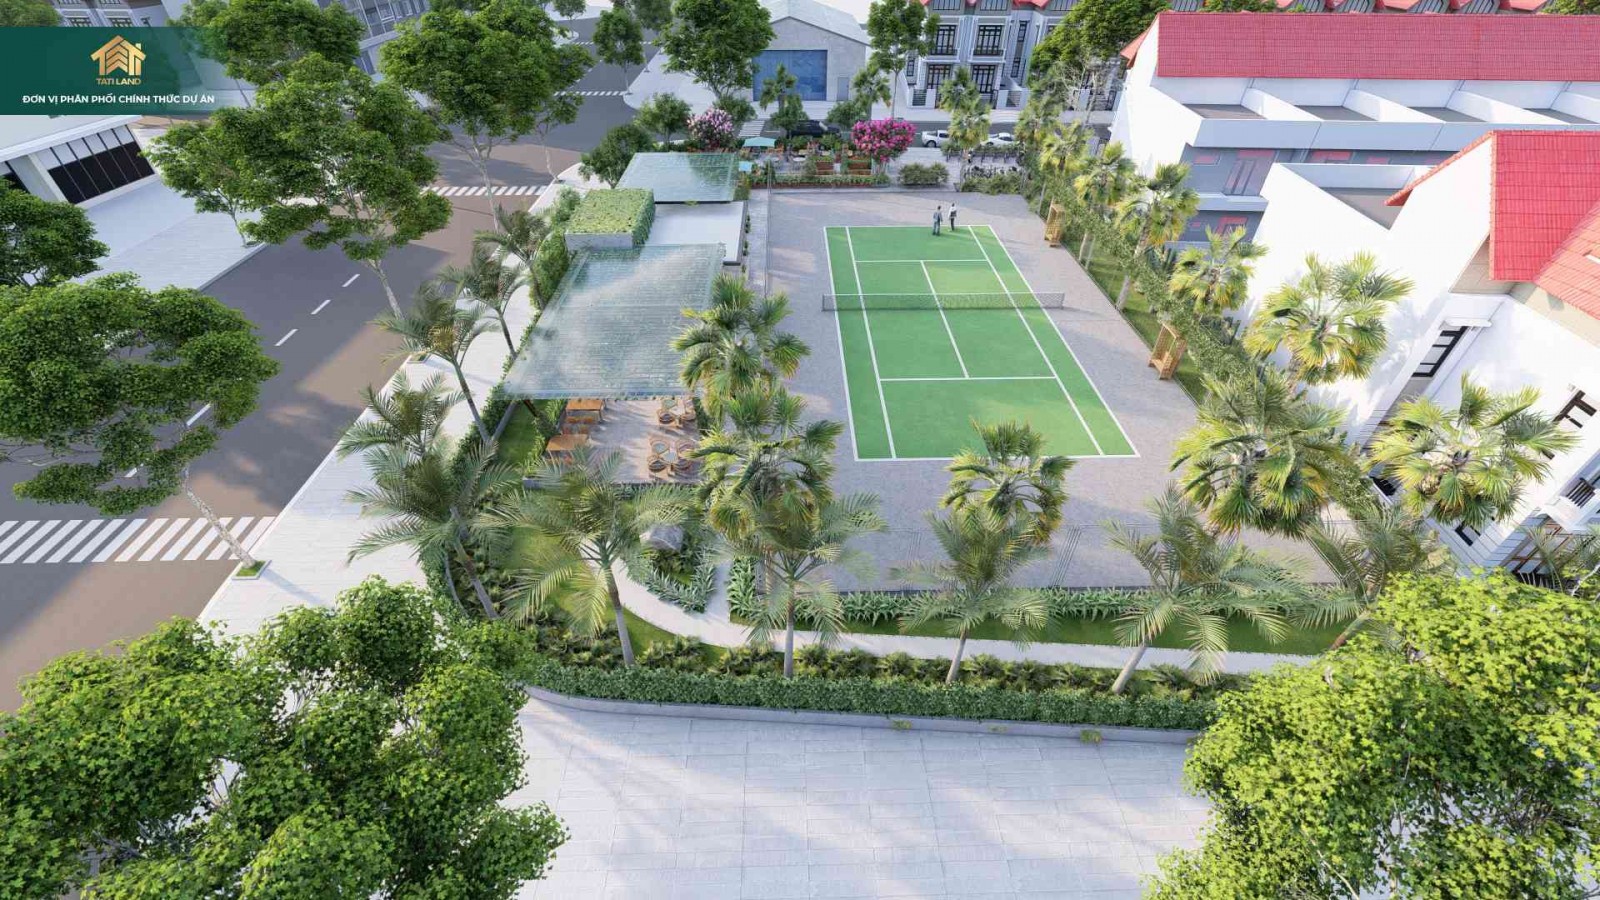 Tiện ích sân tennis tại Biệt thự Hoa Sứ dự án Vịnh An Hòa City